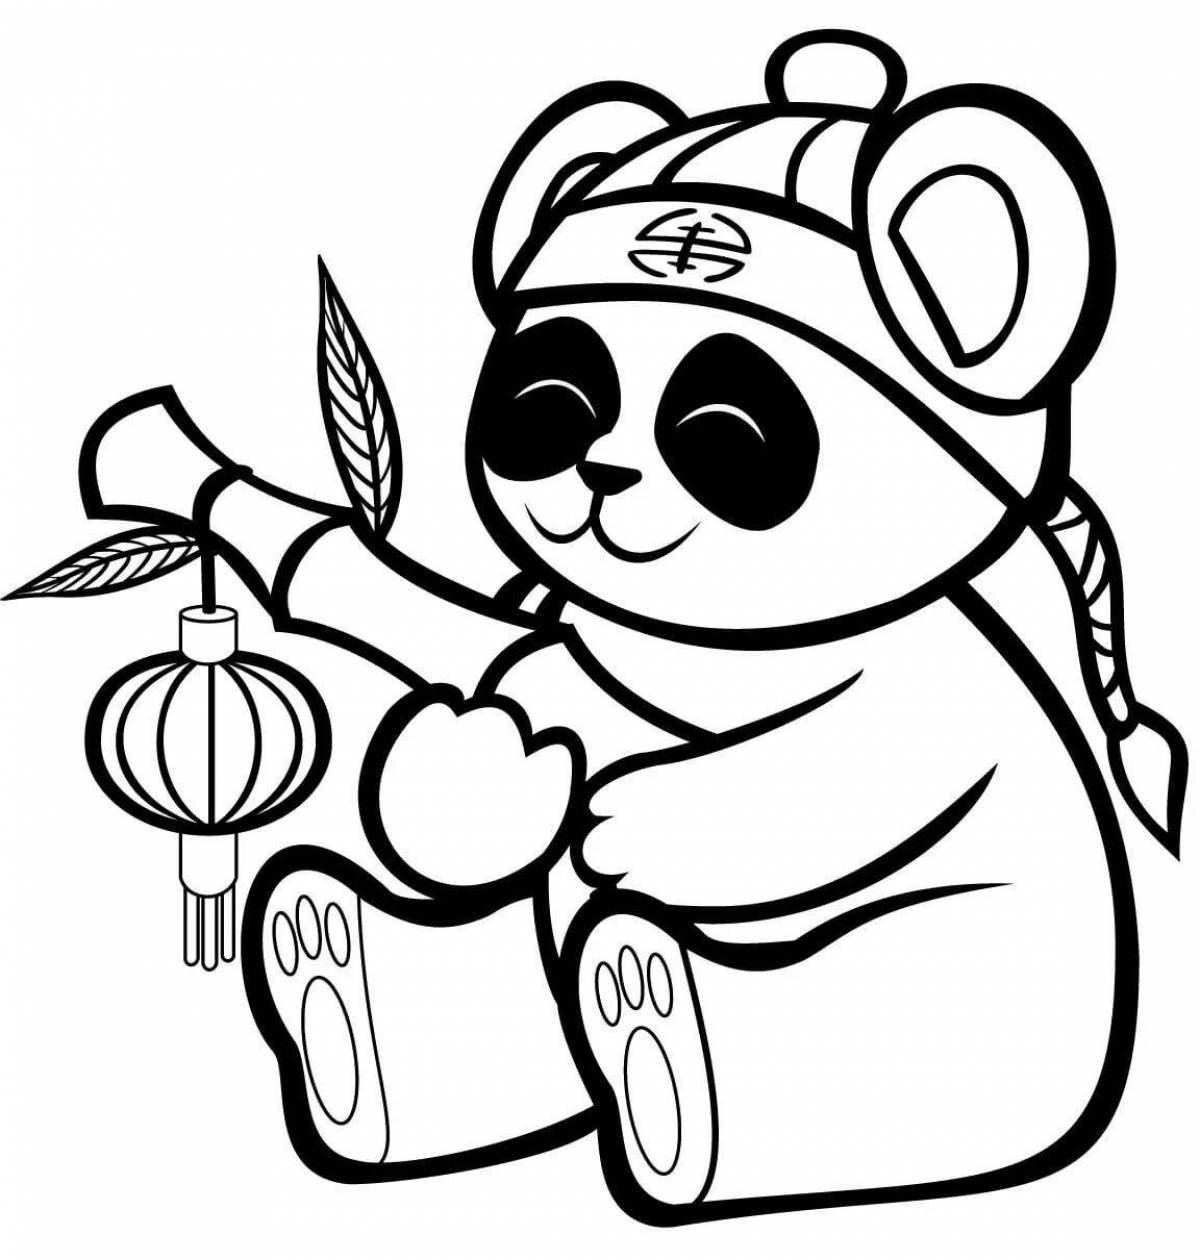 Hugging panda bear coloring book